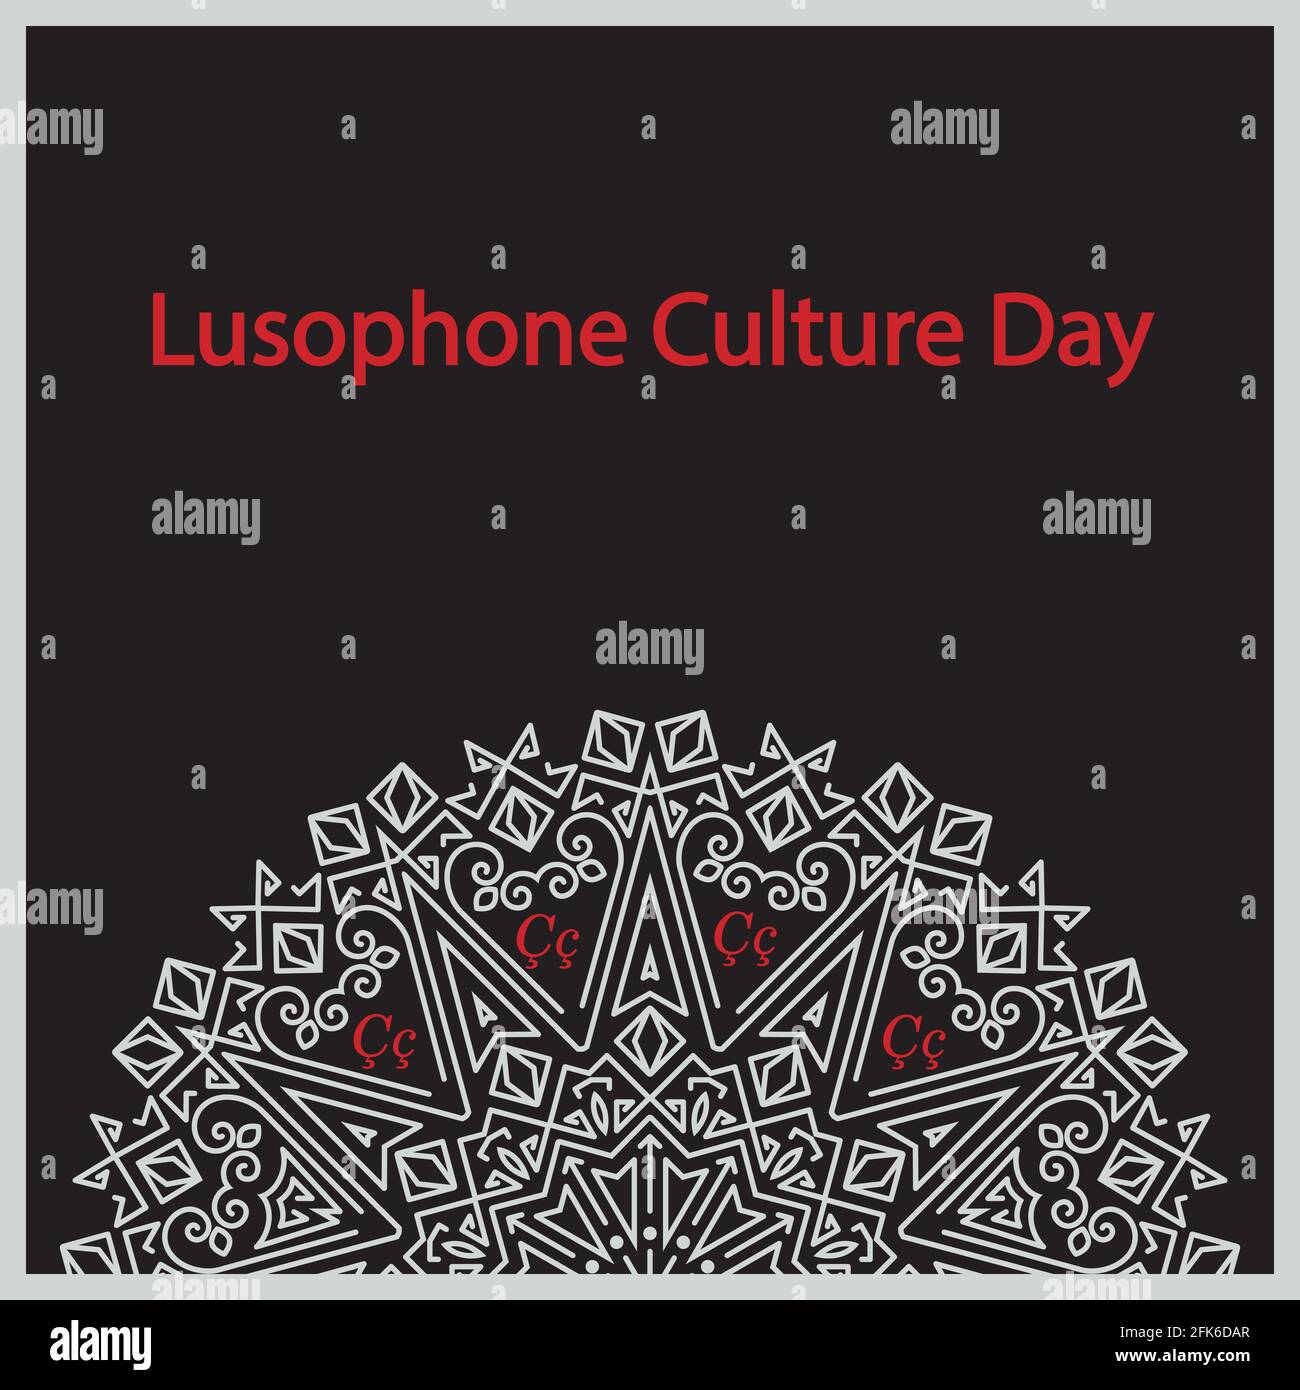 Le 5 mai est la Journée de la culture lusophone dans la communauté de Pays de langue portugaise Illustration de Vecteur